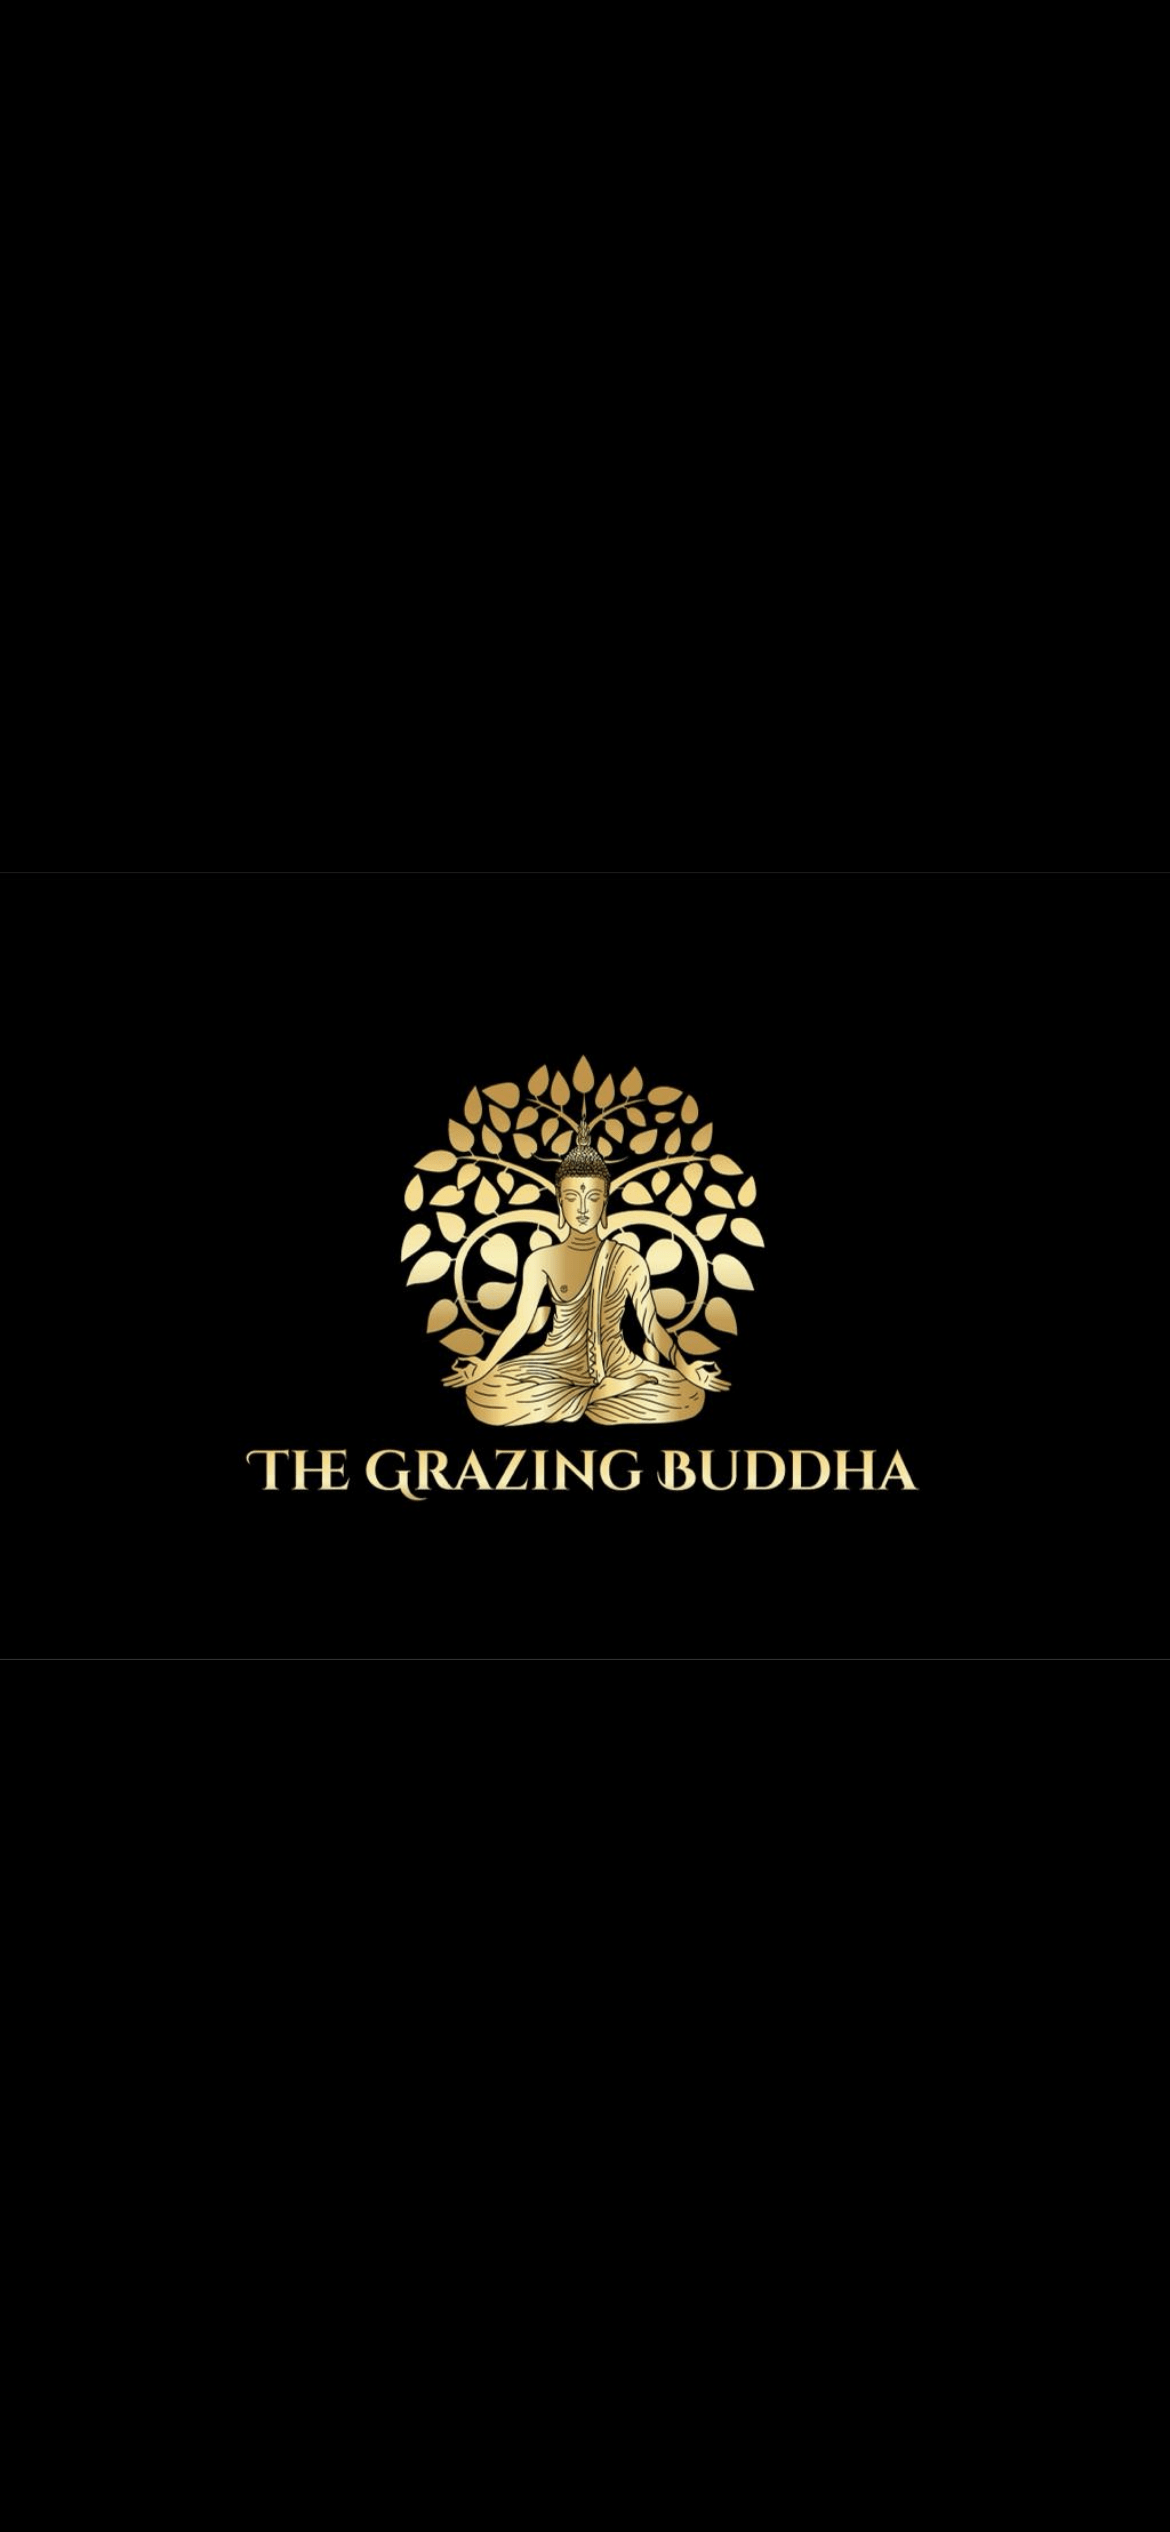 The Grazing Buddha